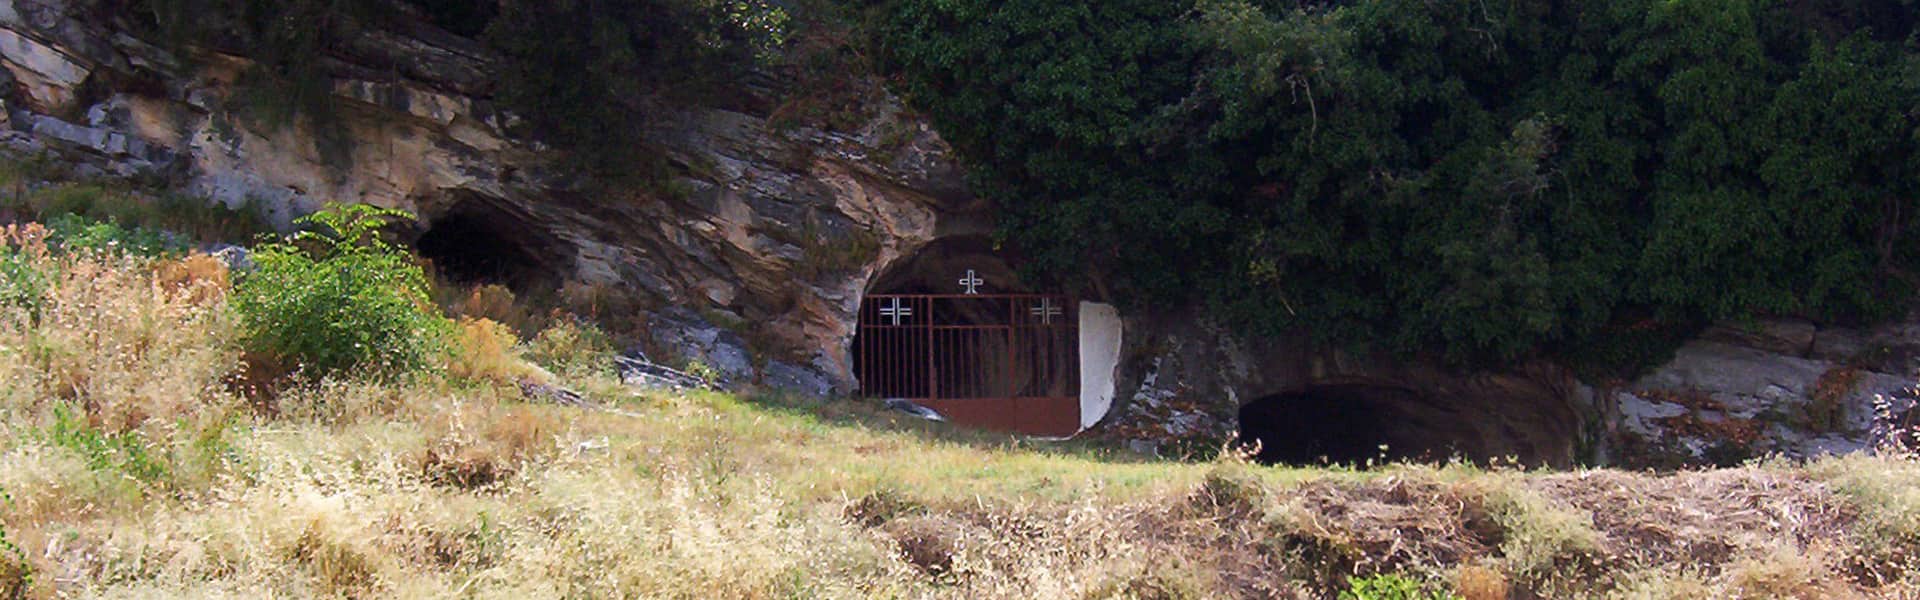 Σπήλαιο της Παναγιάς οι Τρύπες